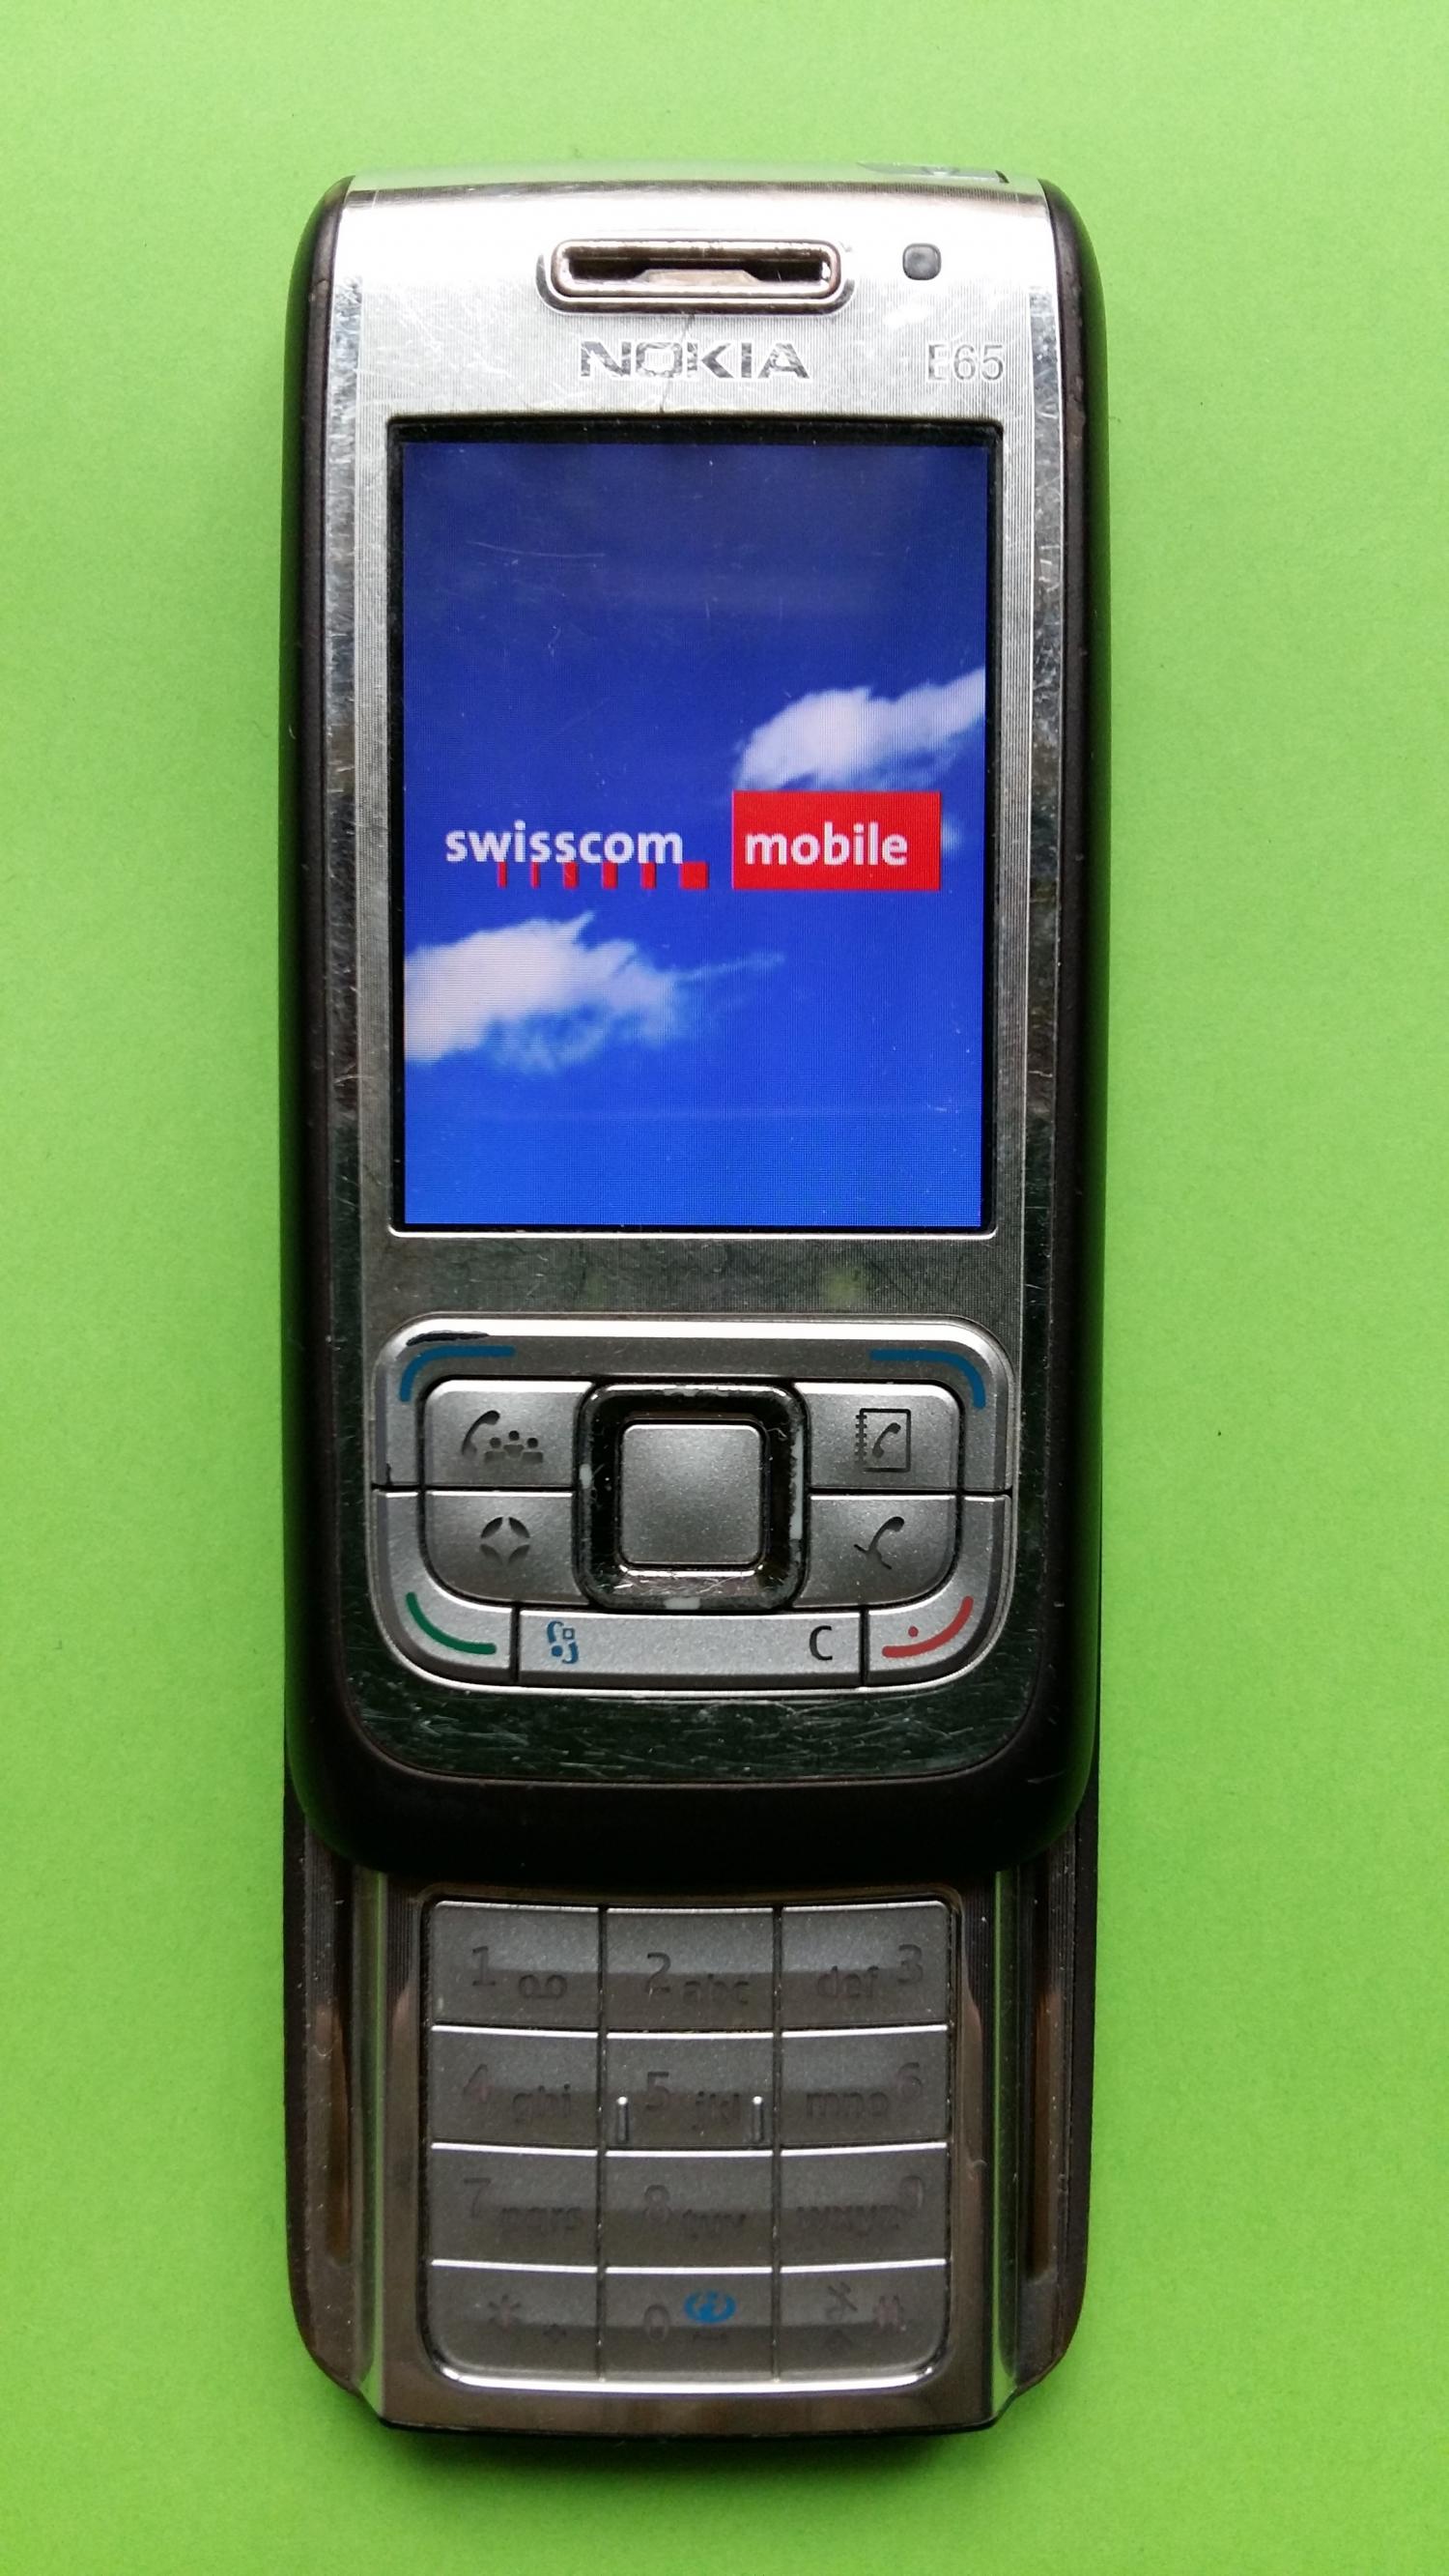 image-7312756-Nokia E65-1 (3)2.jpg